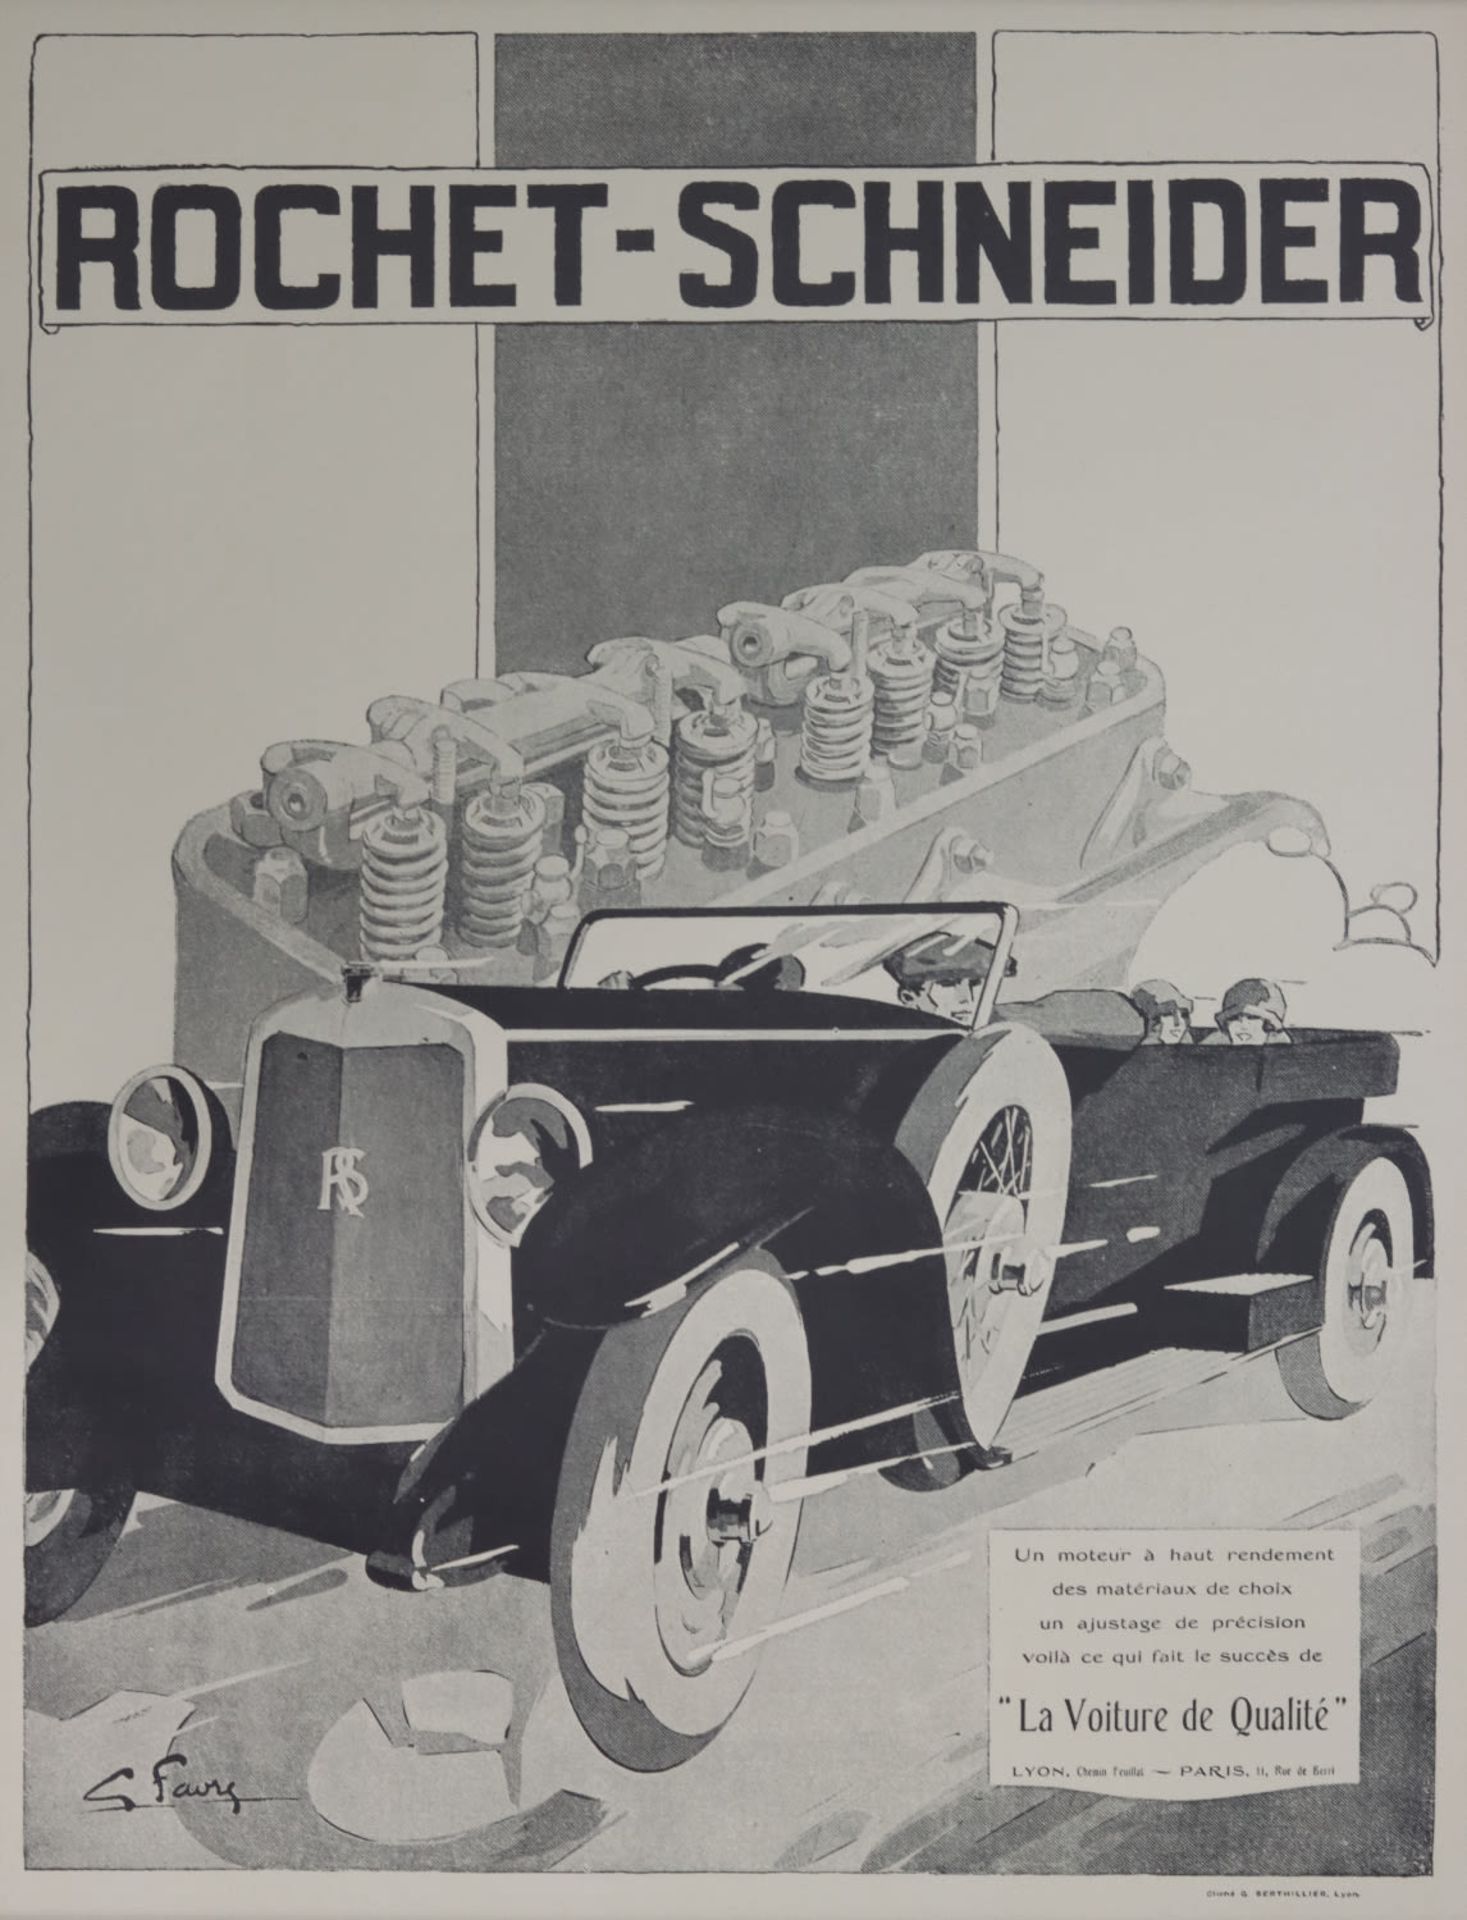 An original poster for Rochet-Schneider, after G.Favry, circa 1920